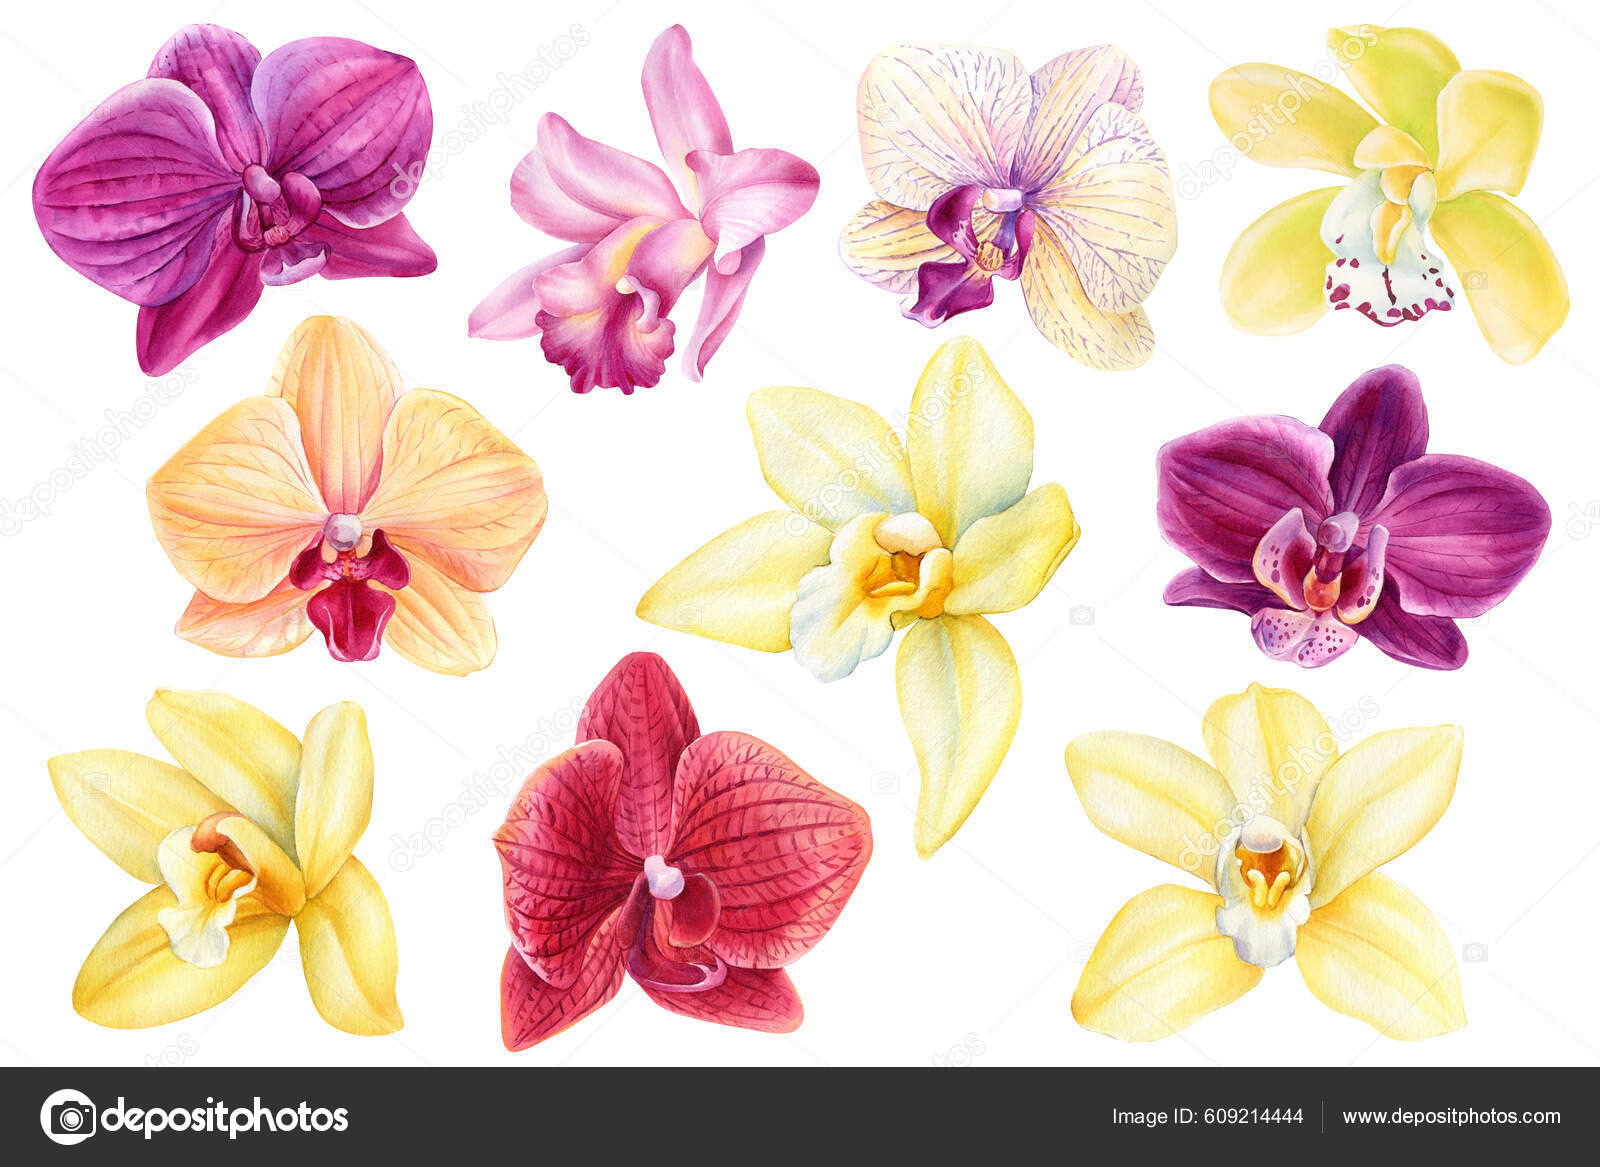 illustrazioni di orchidee gialle viola rosa e rosse depositphotos